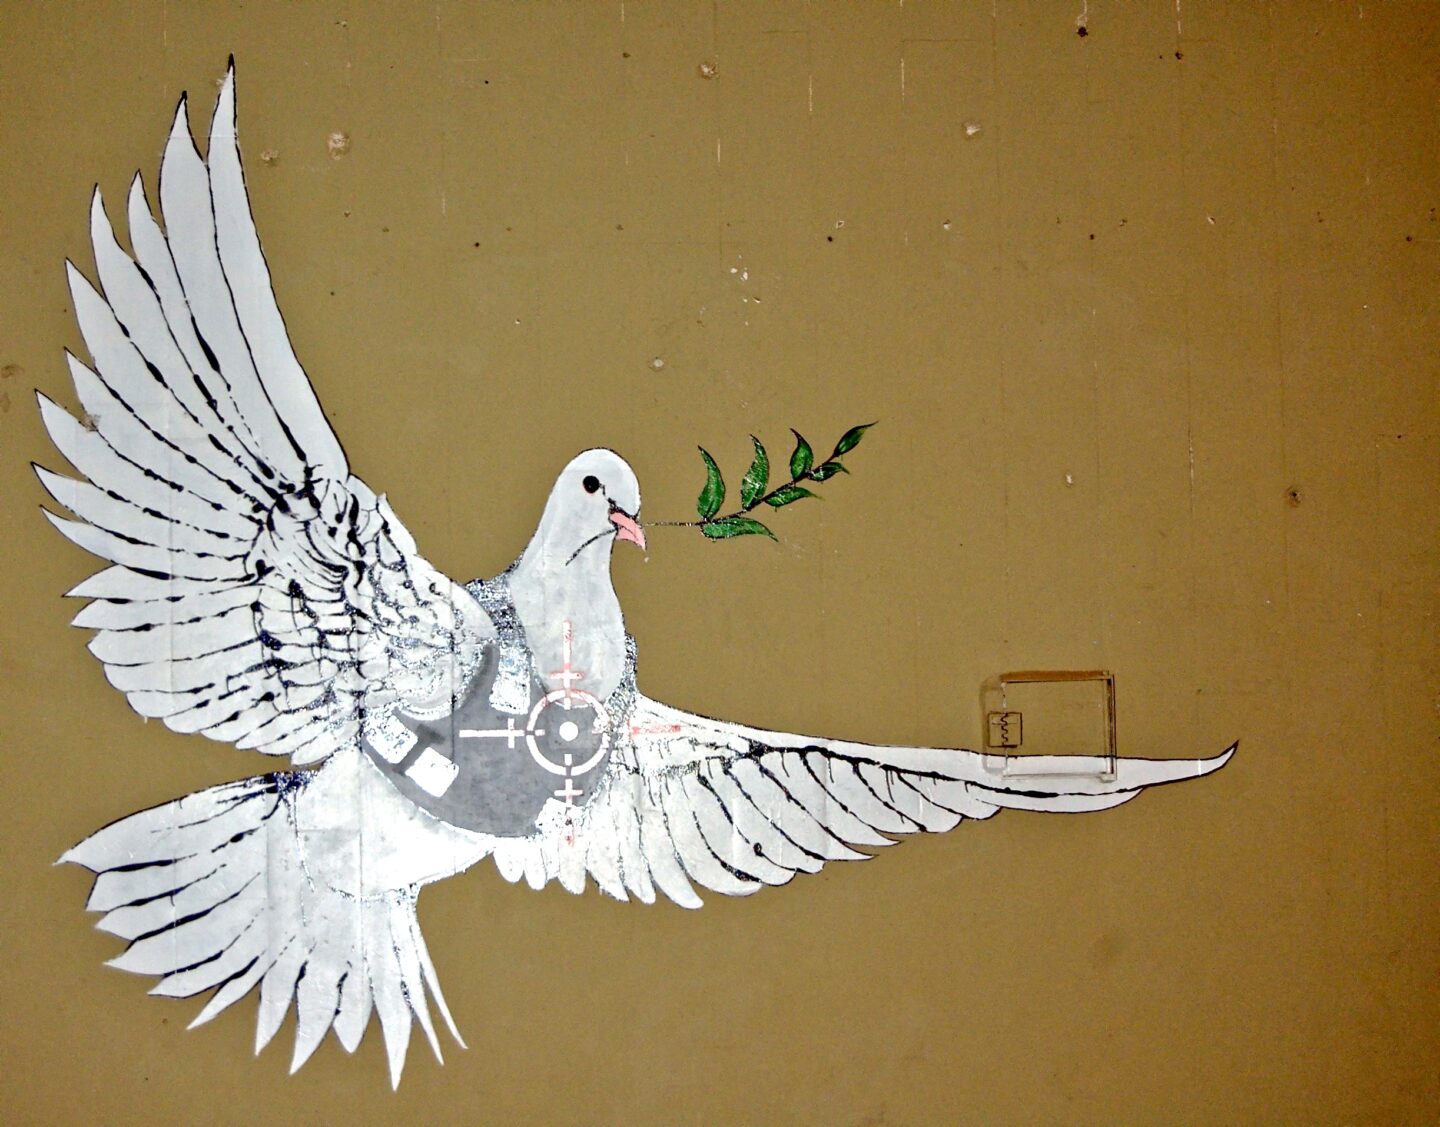 Friedenstaube mit schusssicherer Weste als graffito auf Hauswand, banksy